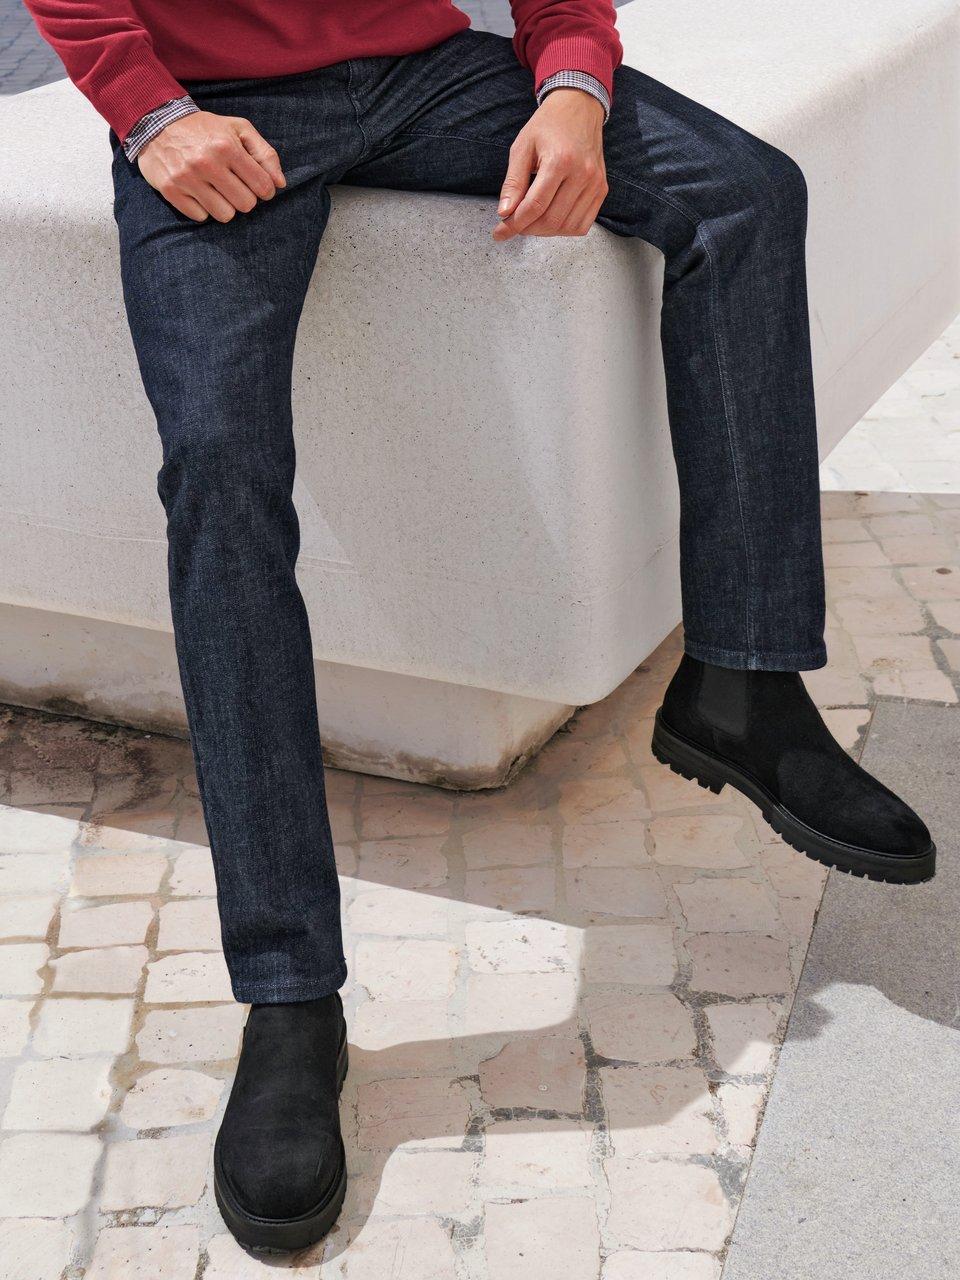 Alberto - Jeans model Pipe